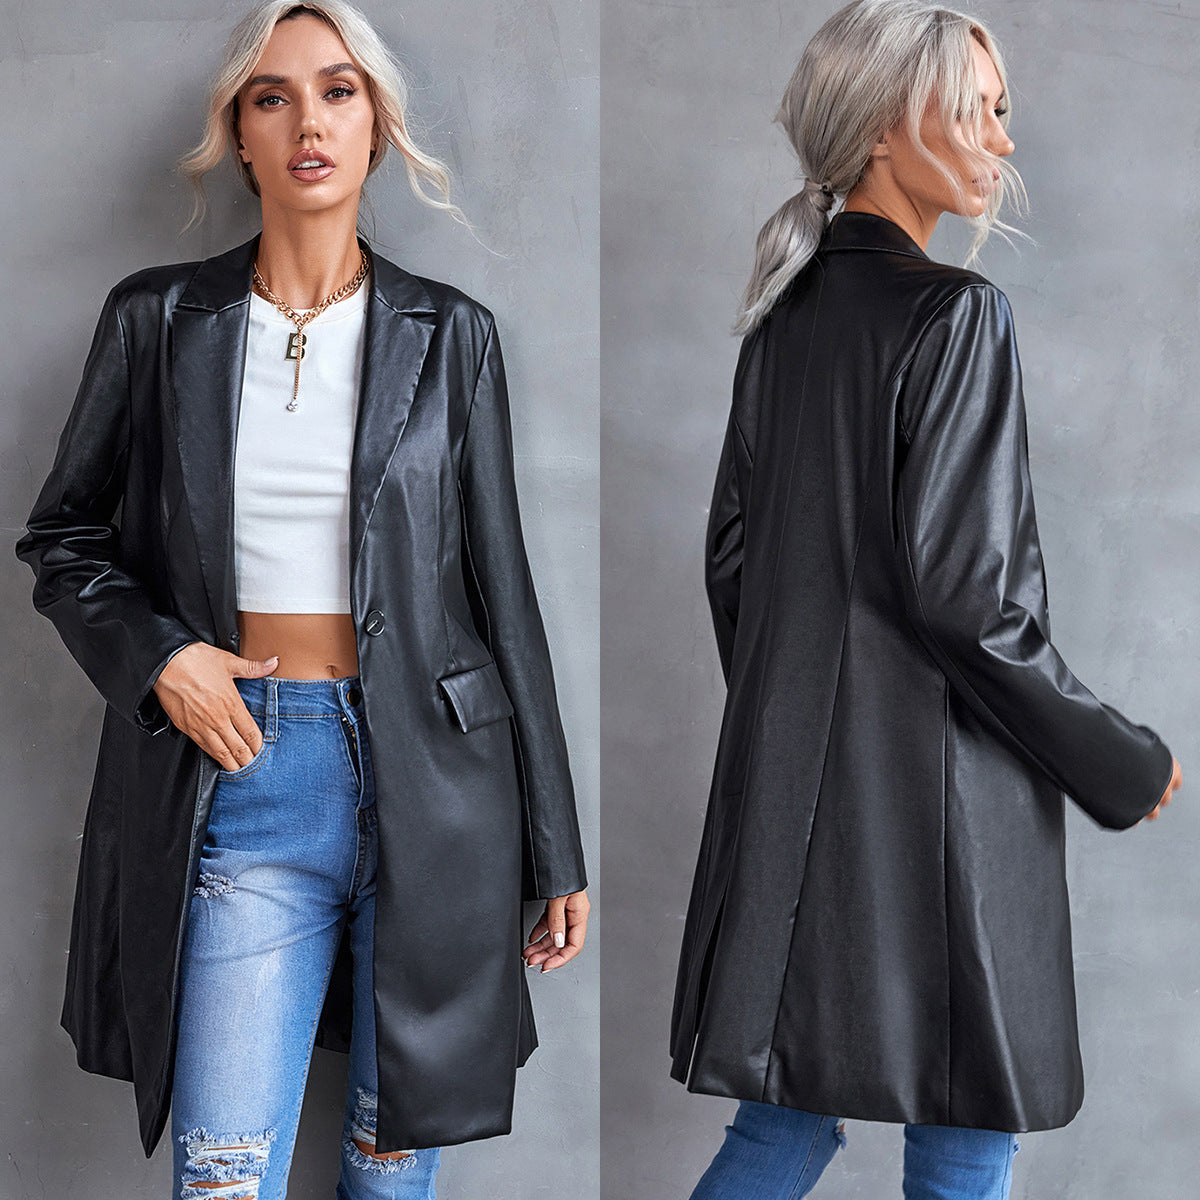 Women's Leather Slim Long-sleeved Windbreaker Blazer Top